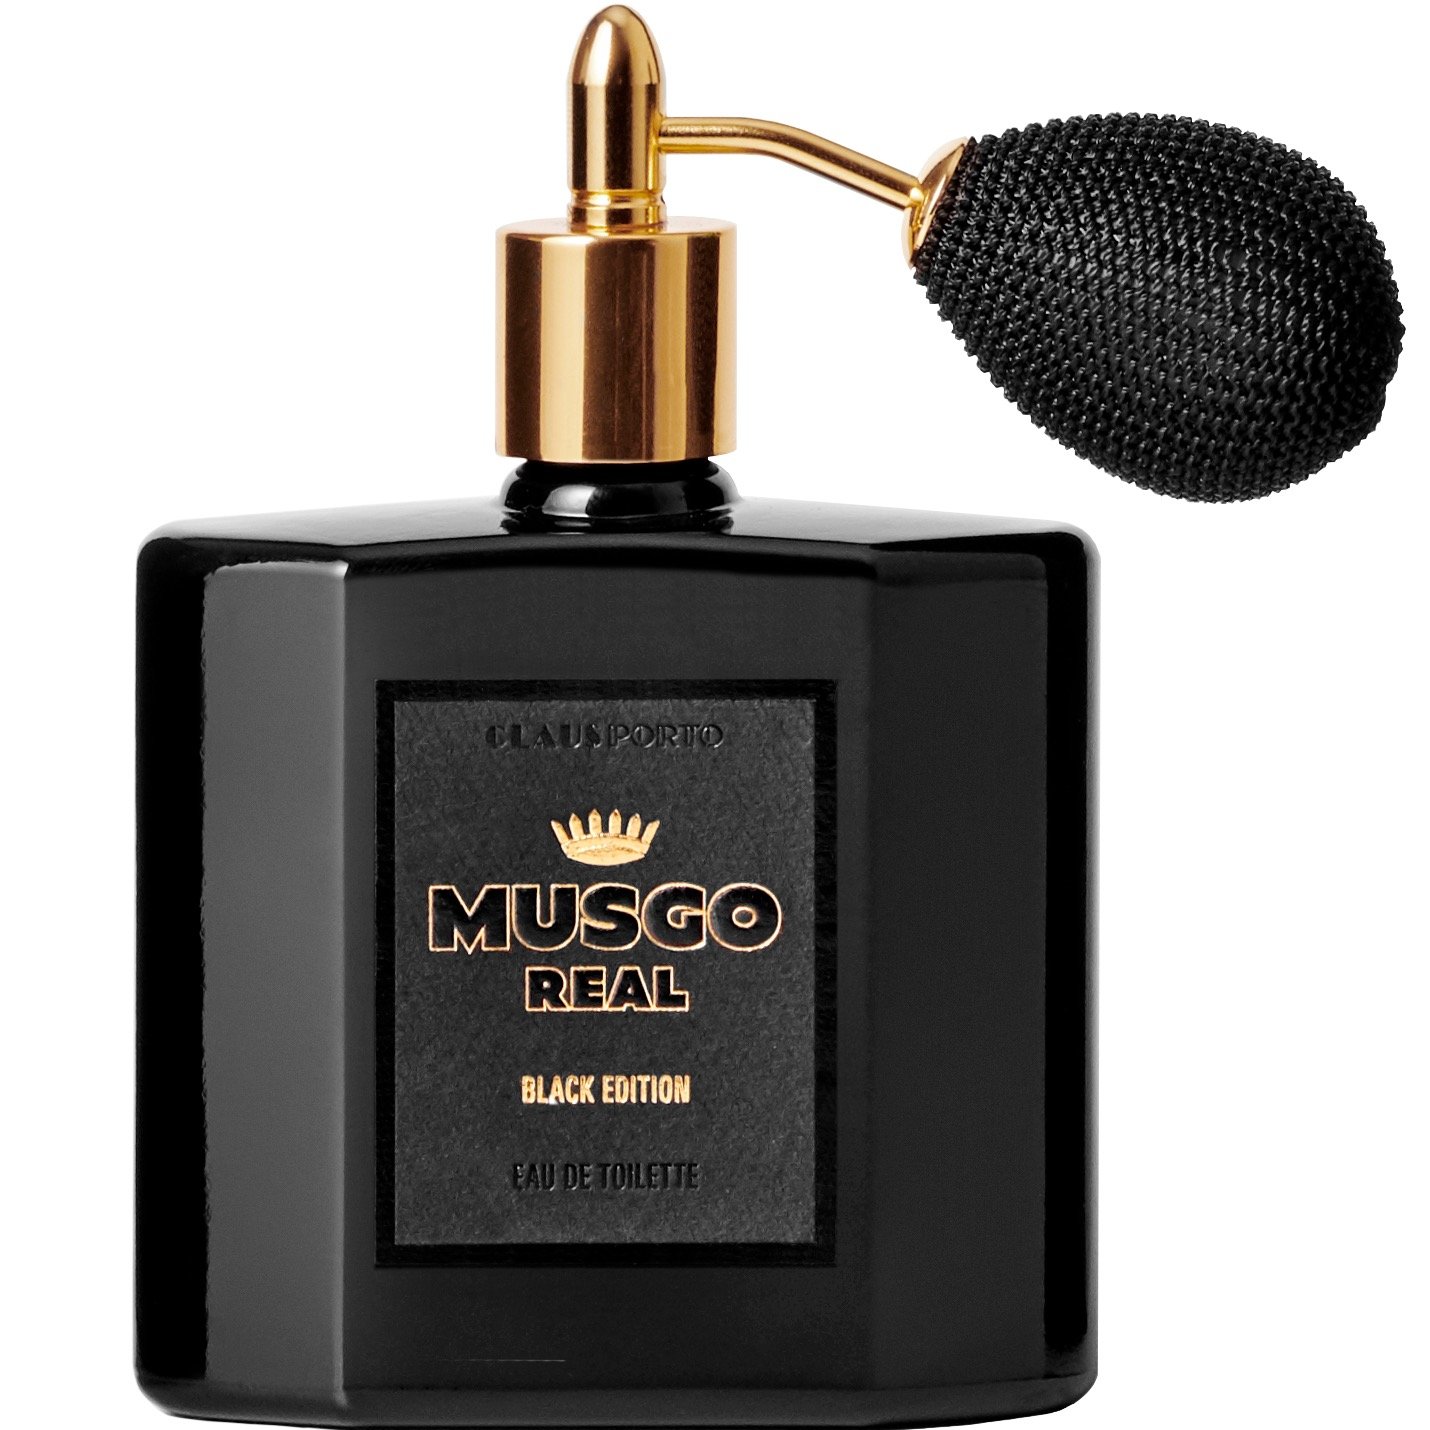 Musgo Real Eau de Toilette Black Edition 100ml - 1.2 - MR-C009